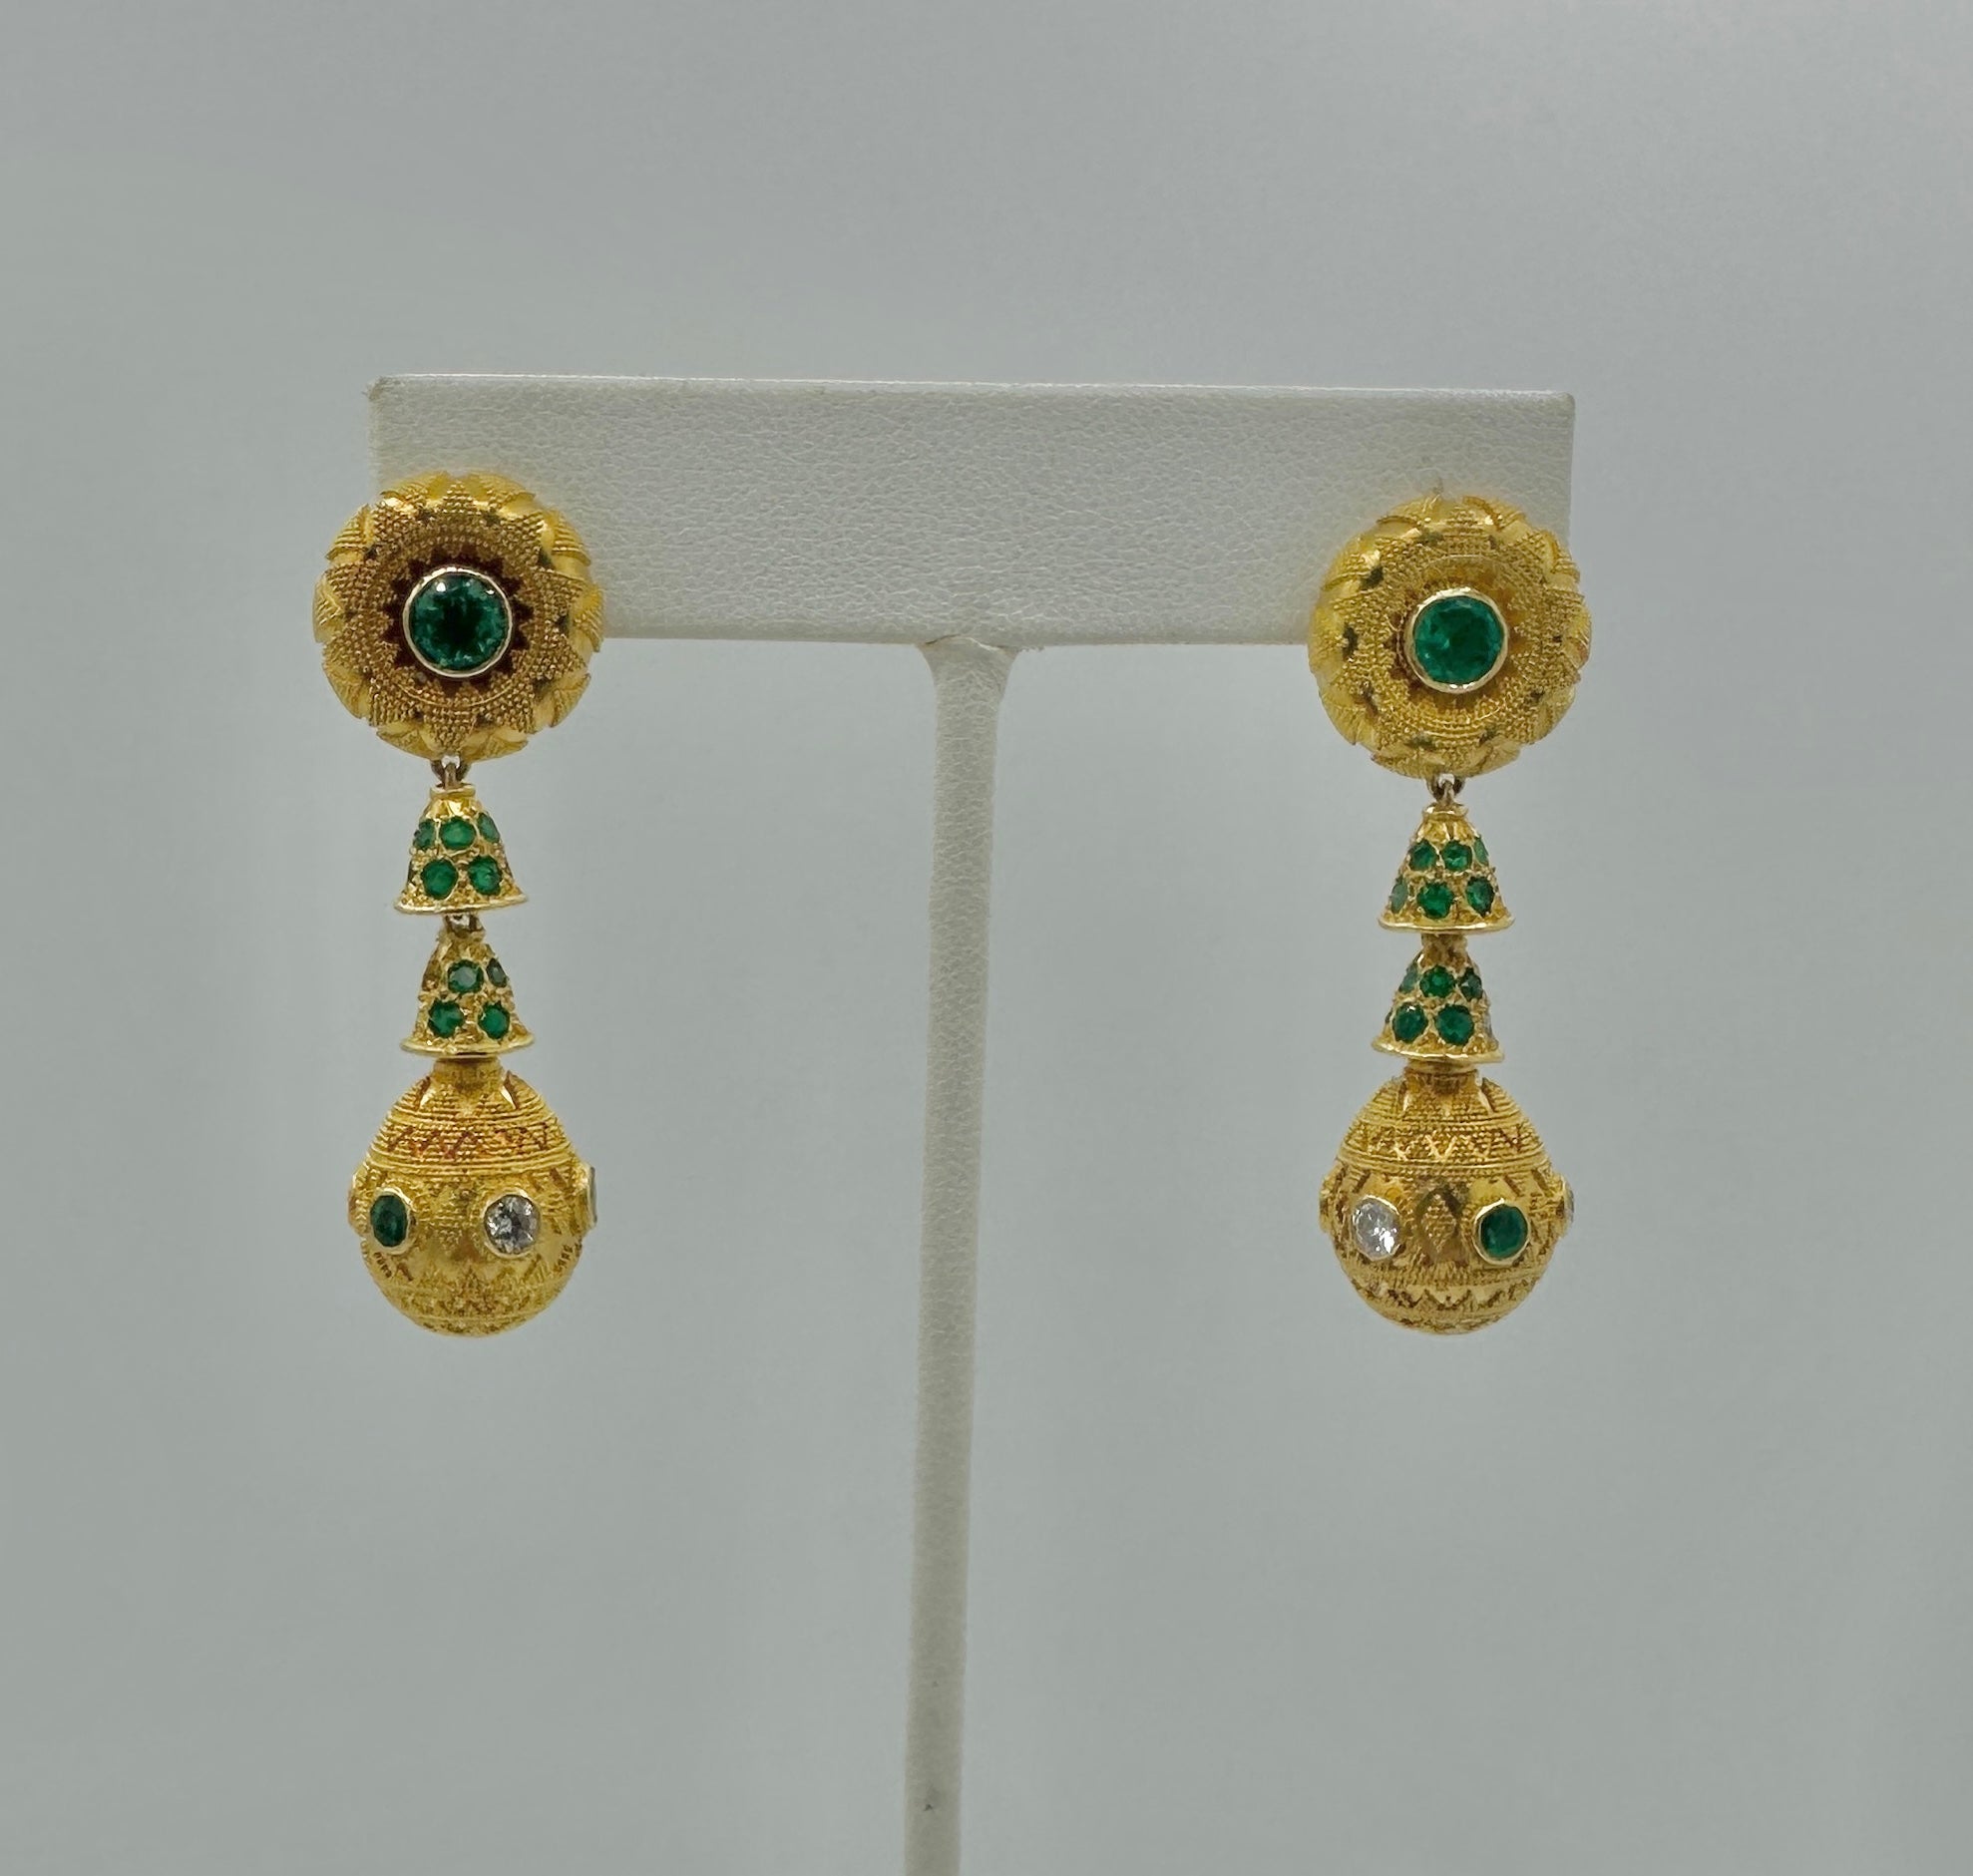 Dies ist ein spektakuläres Paar Smaragd und Diamant Etruscan Revival Anhänger baumeln Tropfen Ohrringe in 22 Karat Gelbgold.   Die  Die beeindruckenden Ohrringe sind 1 7/8 Zoll lang und haben vier gelenkige Tropfenabschnitte.  Die Oberteile sind mit